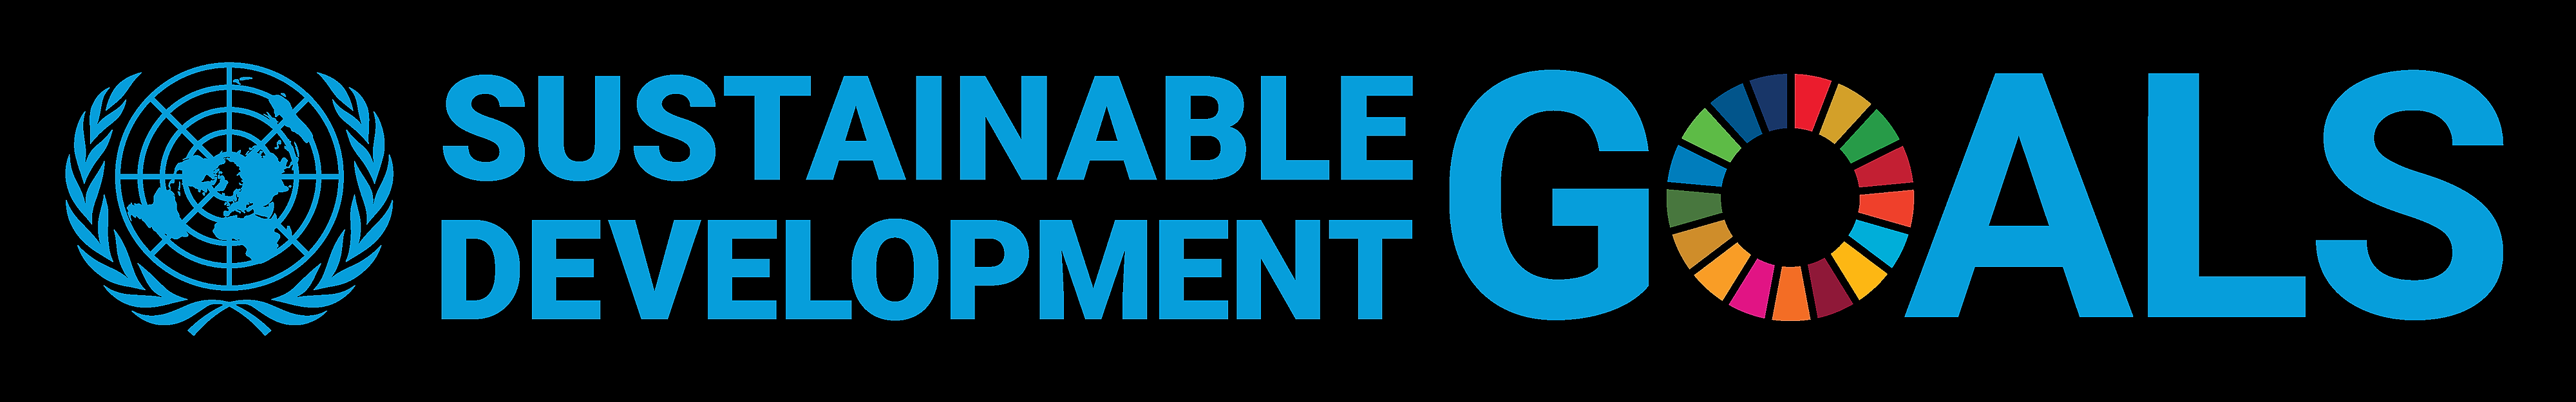 E_SDG_logo_UN_emblem_horizontal_trans_PRINT.png